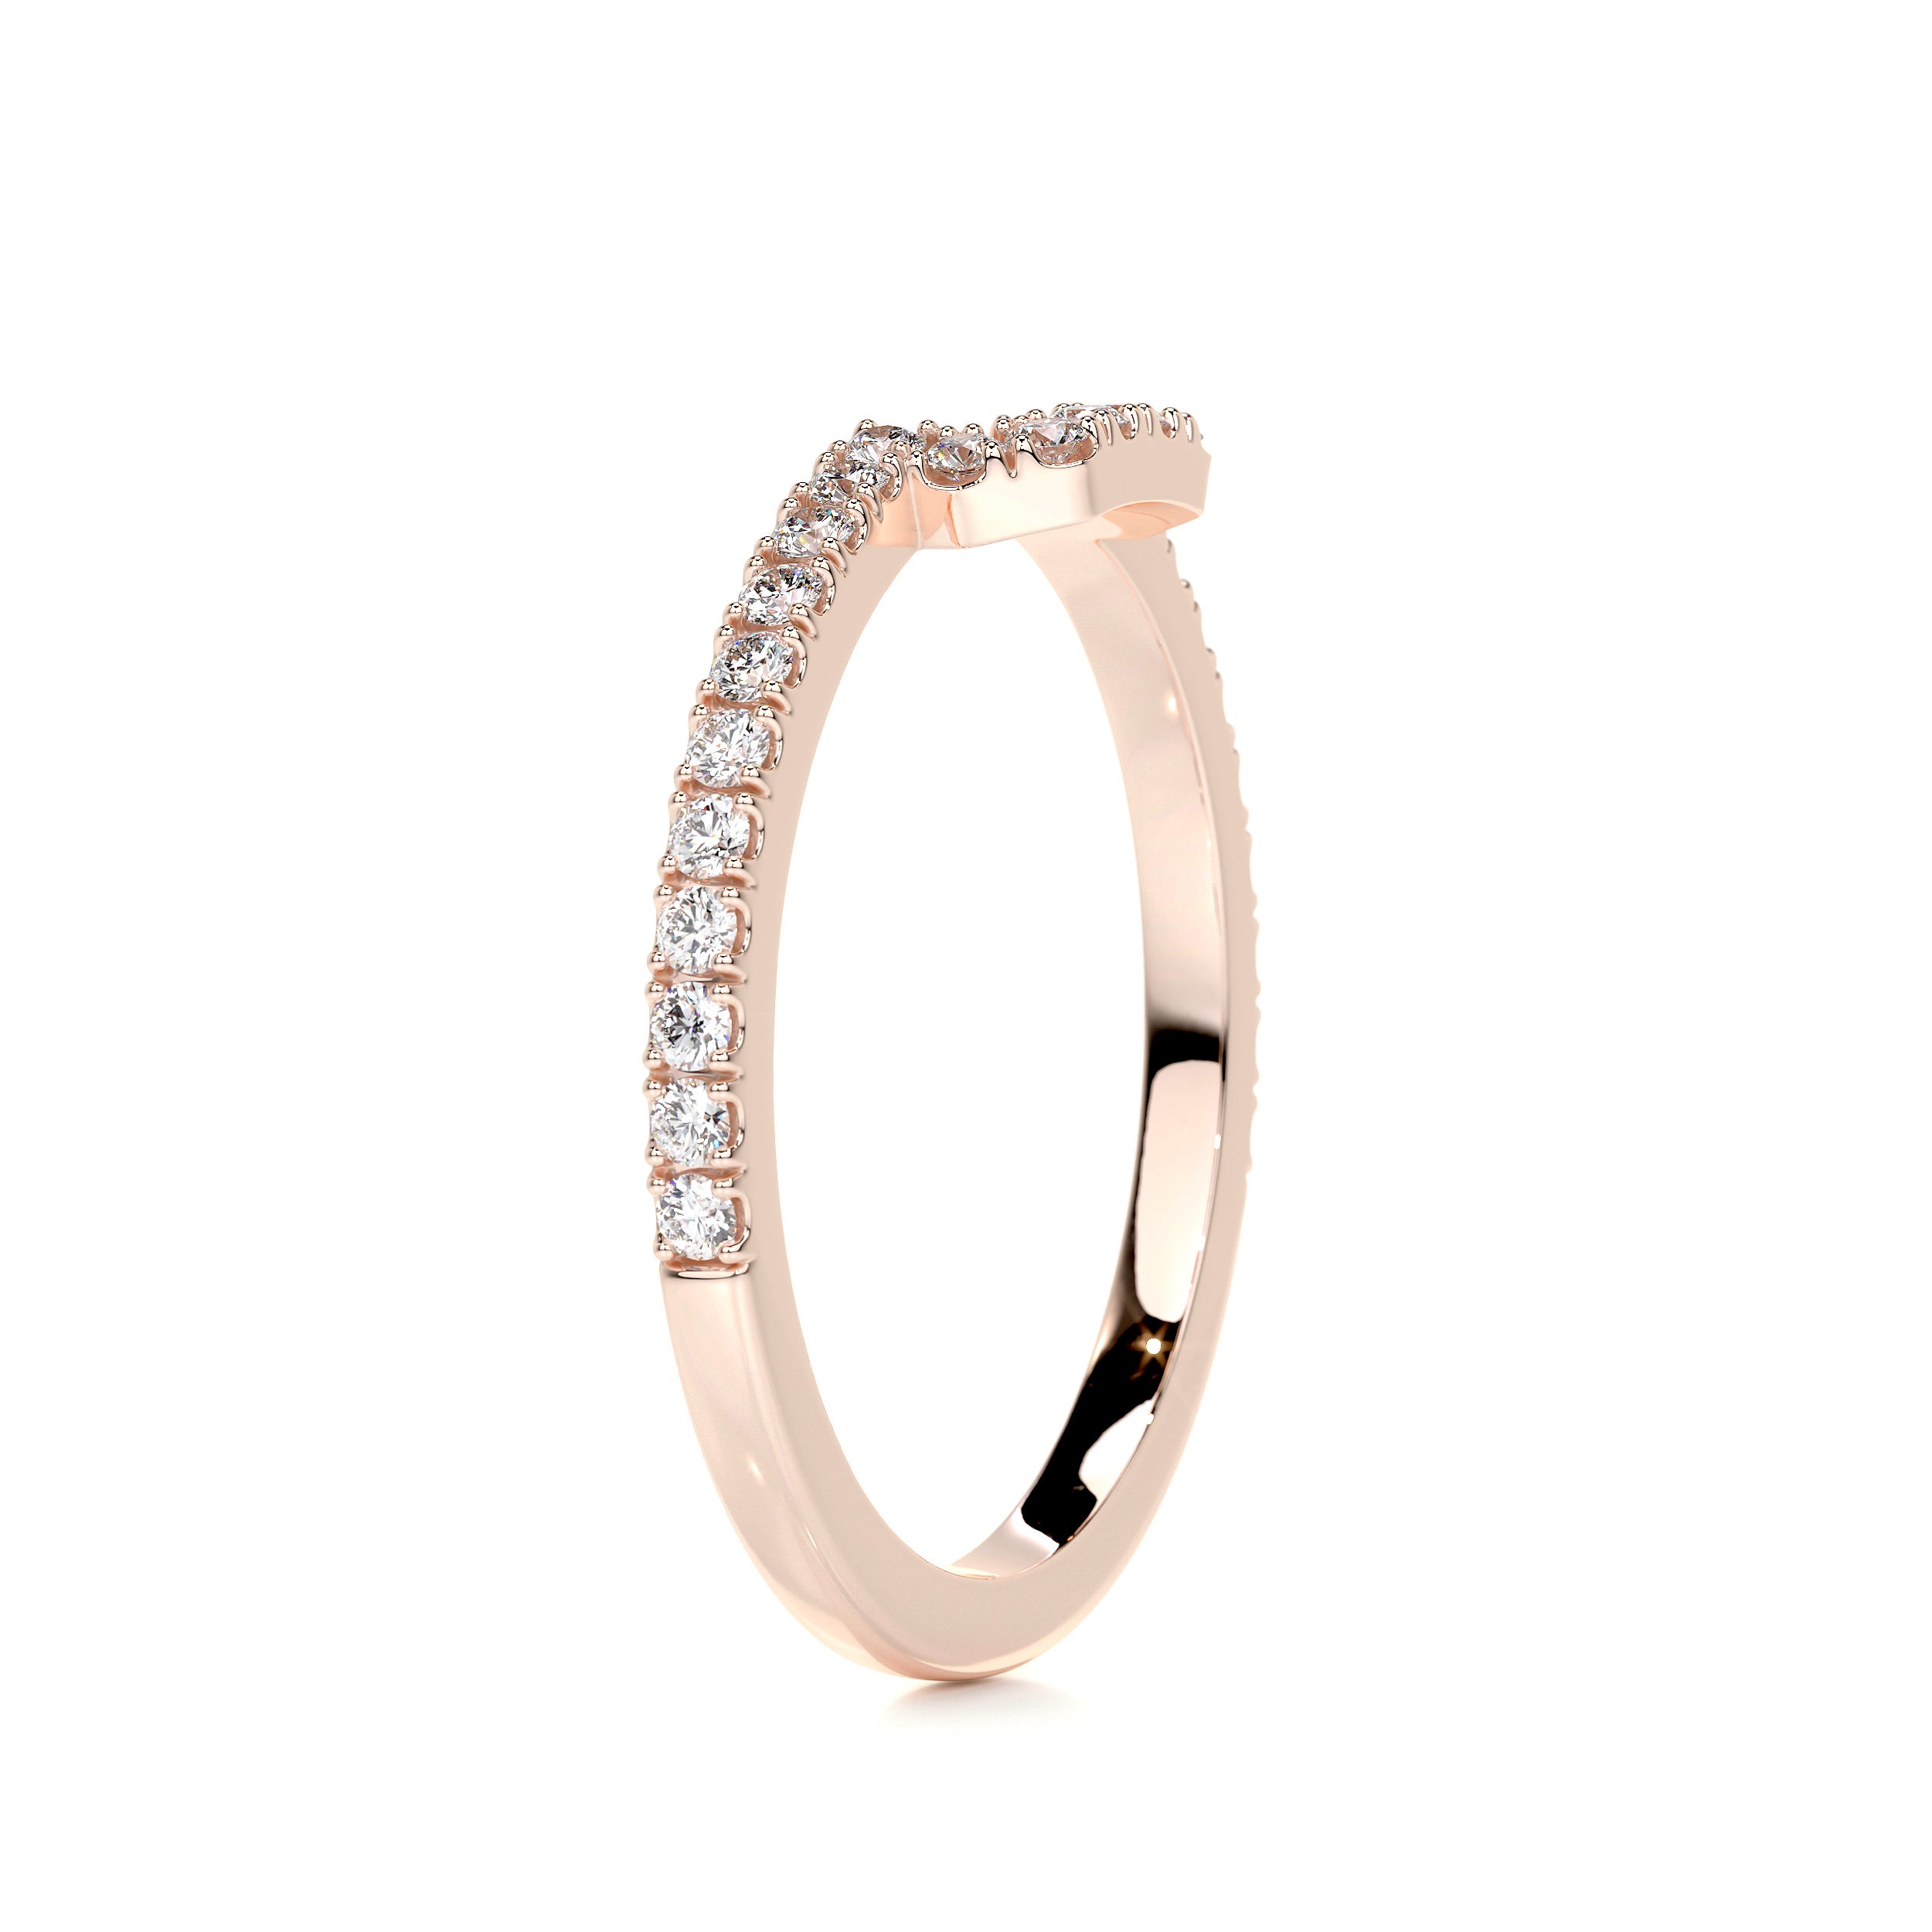 Luna Diamond Wedding Ring   (0.30 Carat) -14K Rose Gold